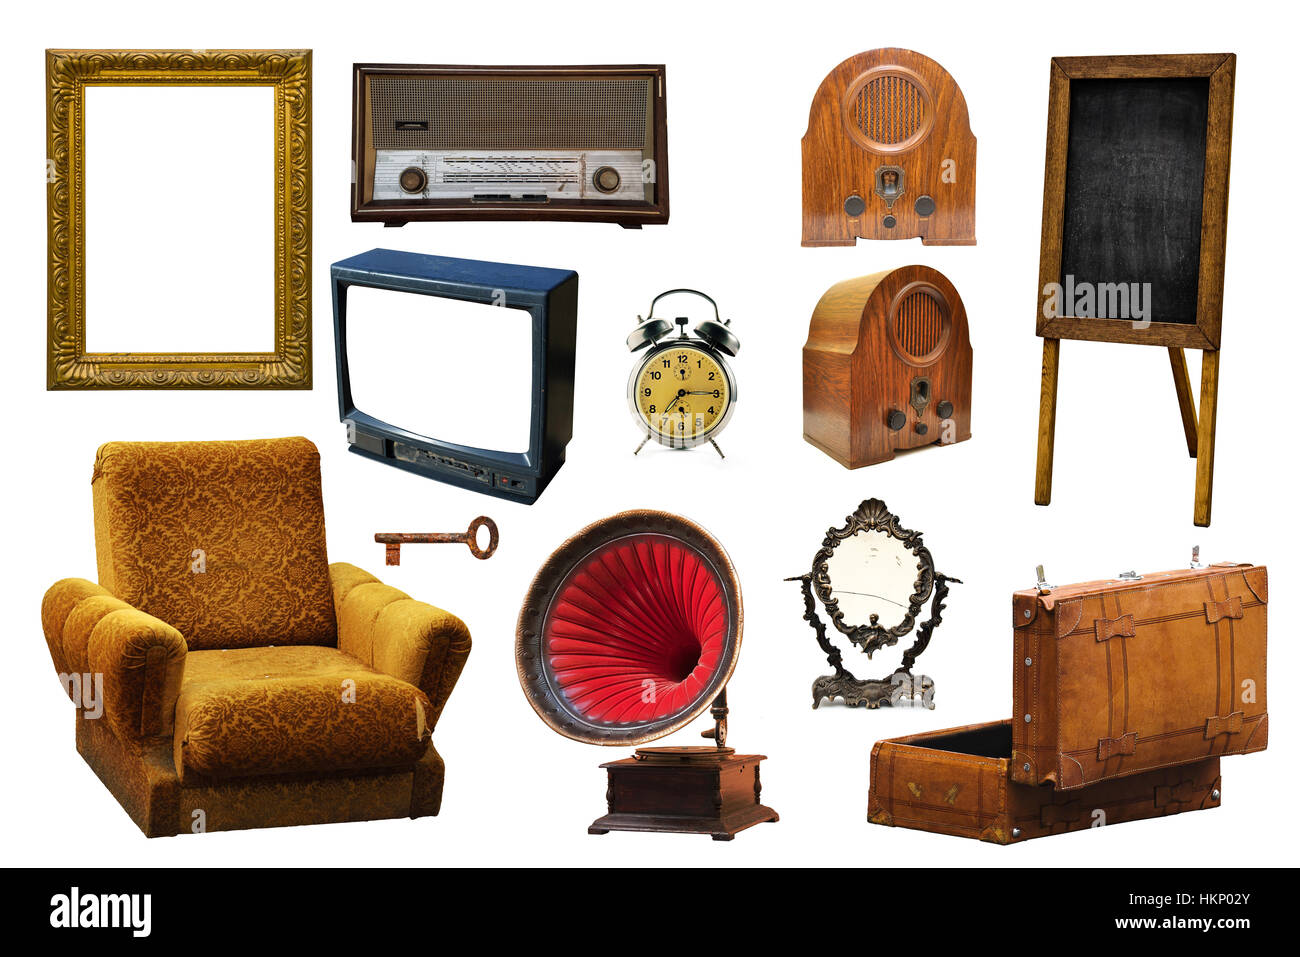 Sammlung von Vintage retro-Heimat verwandte Objekte isoliert auf weißem Hintergrund - Sessel, Grammophon, Schlüssel, Spiegel, Bilderrahmen, Funkgerät Stockfoto